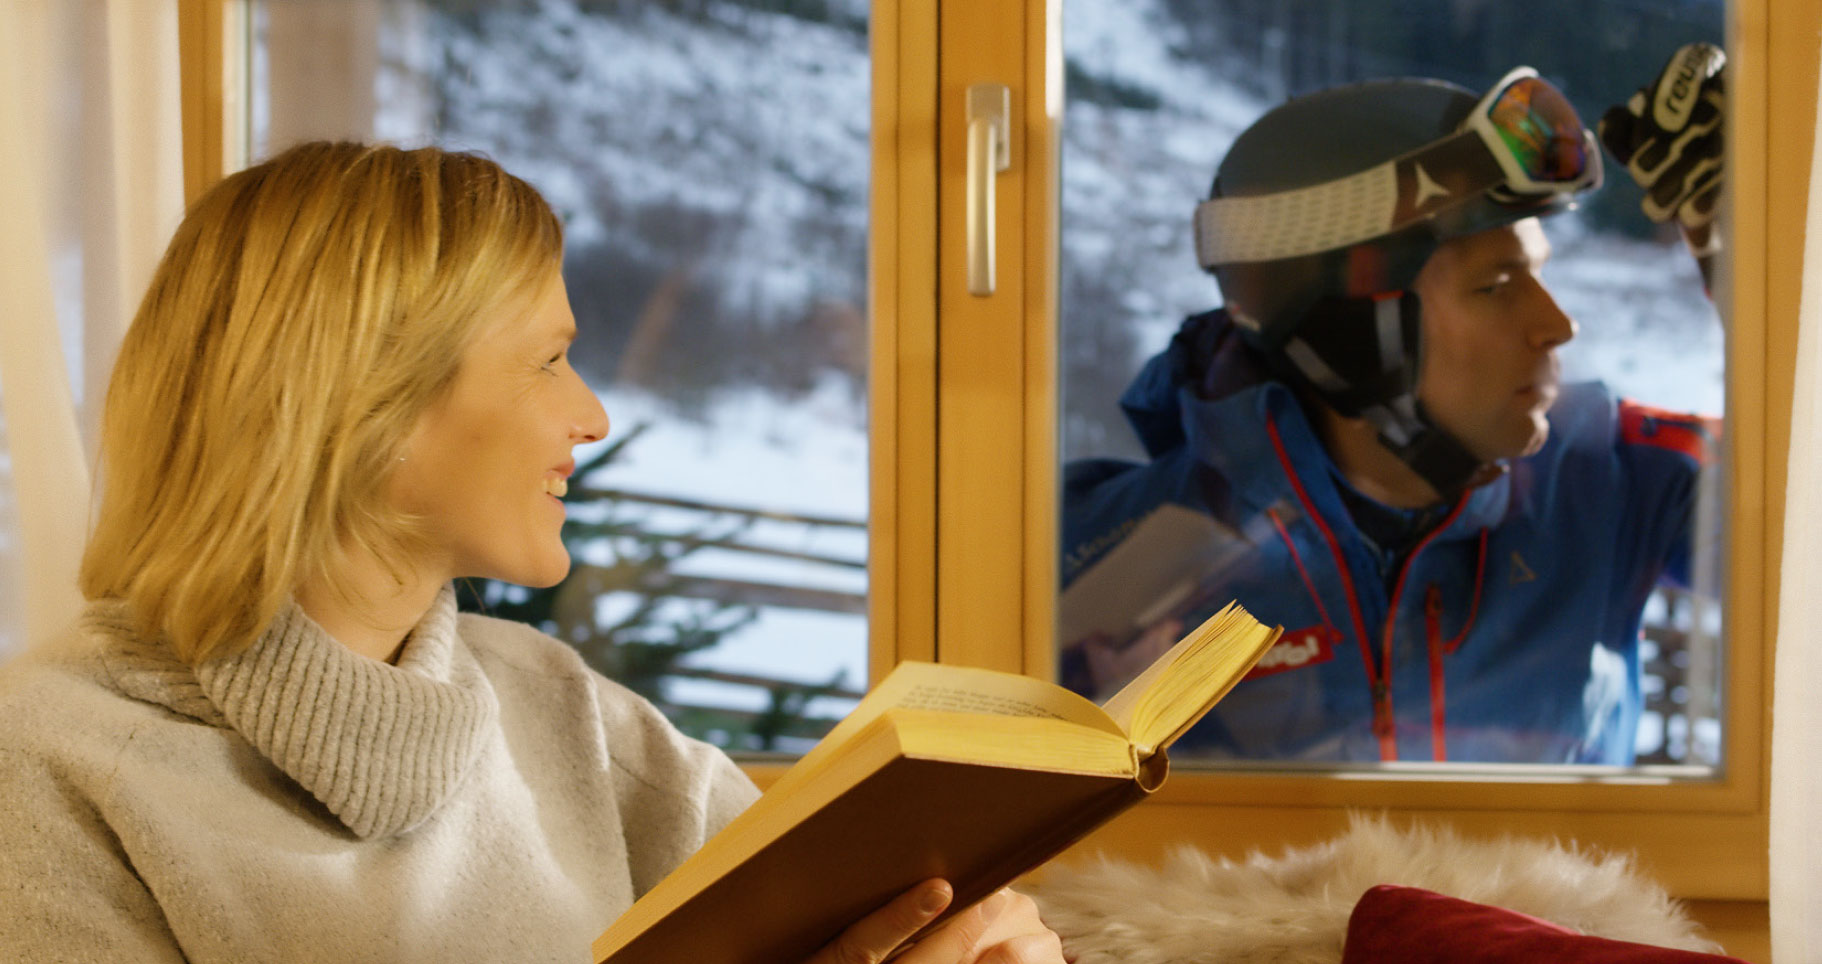 Frau mit Buch vor Fenster, Mann mit Skiausrüstung dahinter